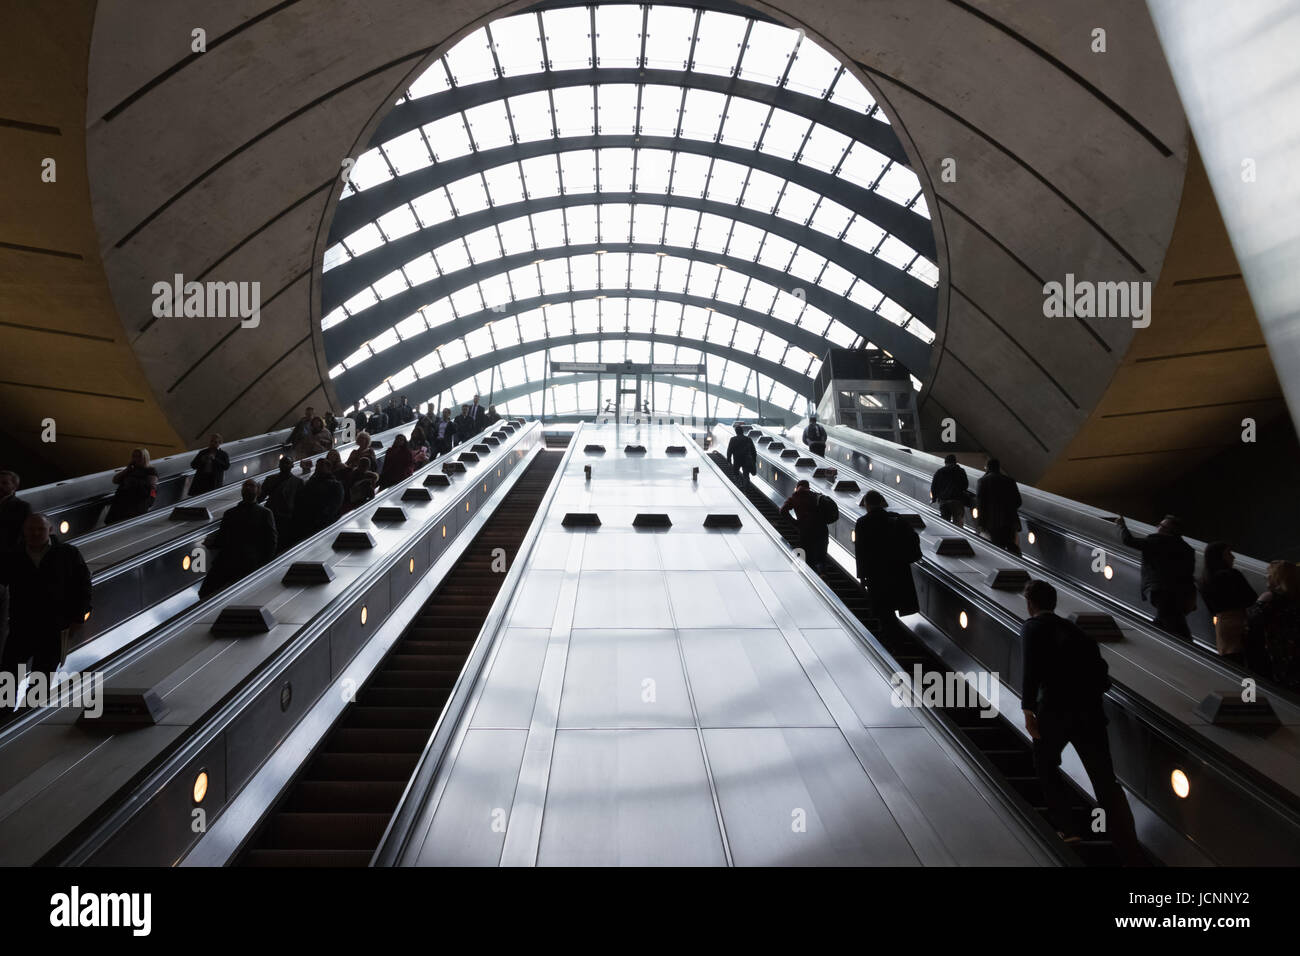 Londres, Royaume-Uni - 27 mars 2017 : la station de métro de Canary Wharf pendant l'heure de pointe avec de nombreux navetteurs Banque D'Images